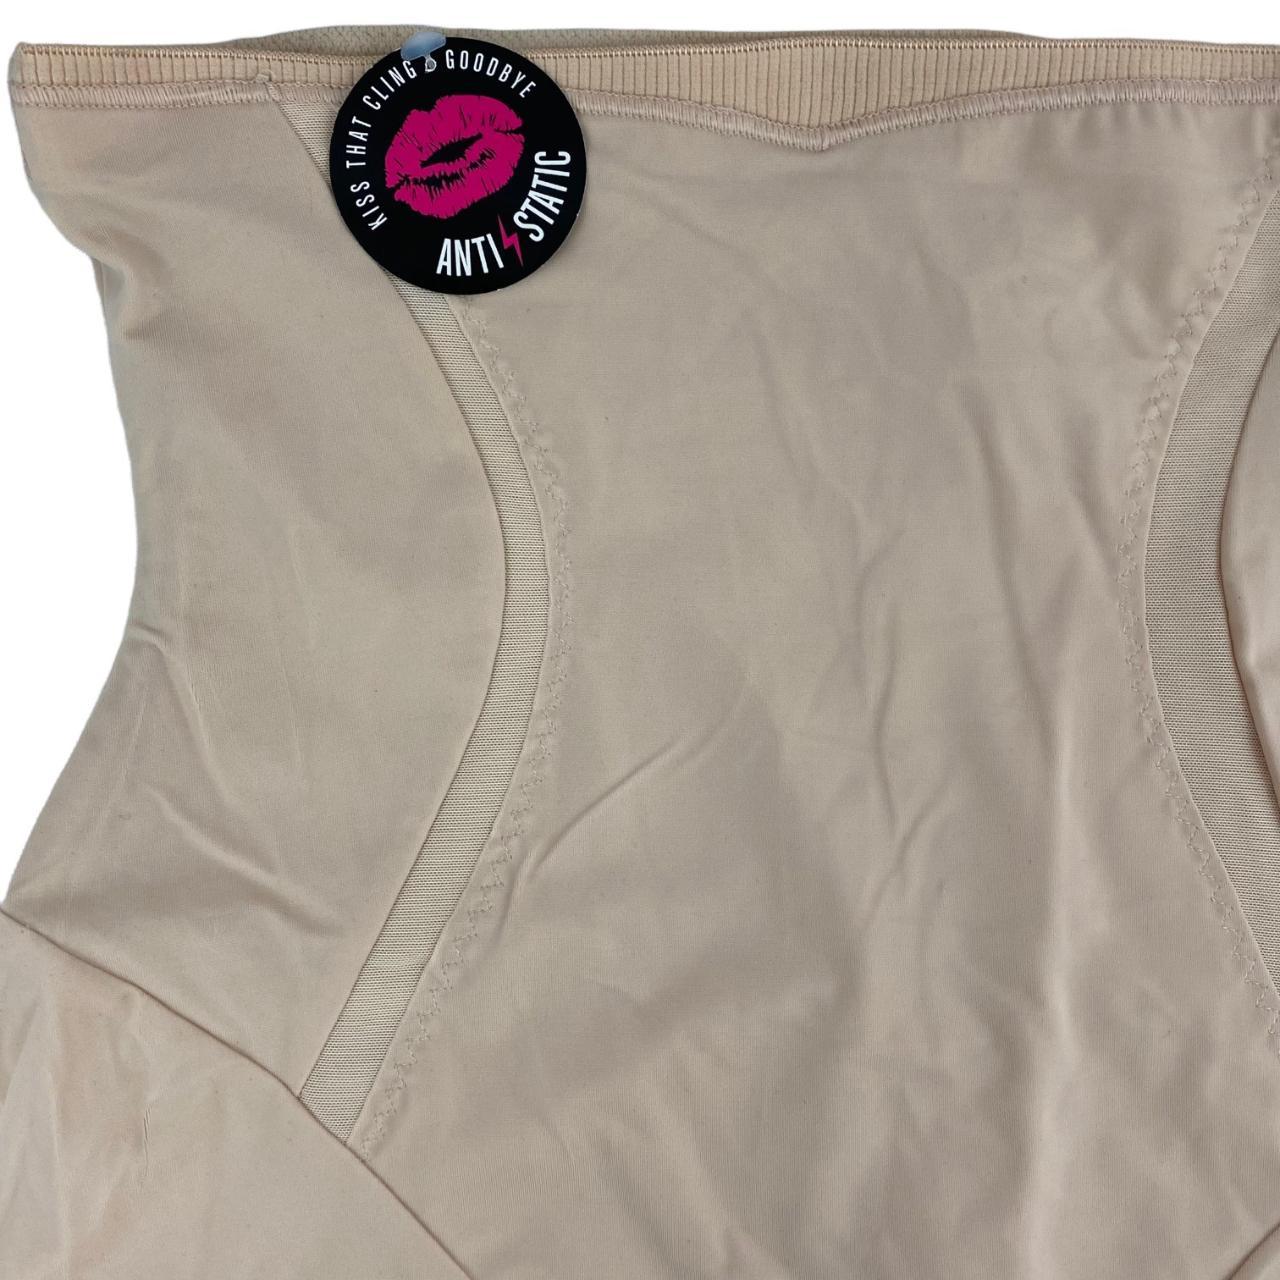 Product Image 4 - Maidenform Nude Shapewear Shaper Shorts